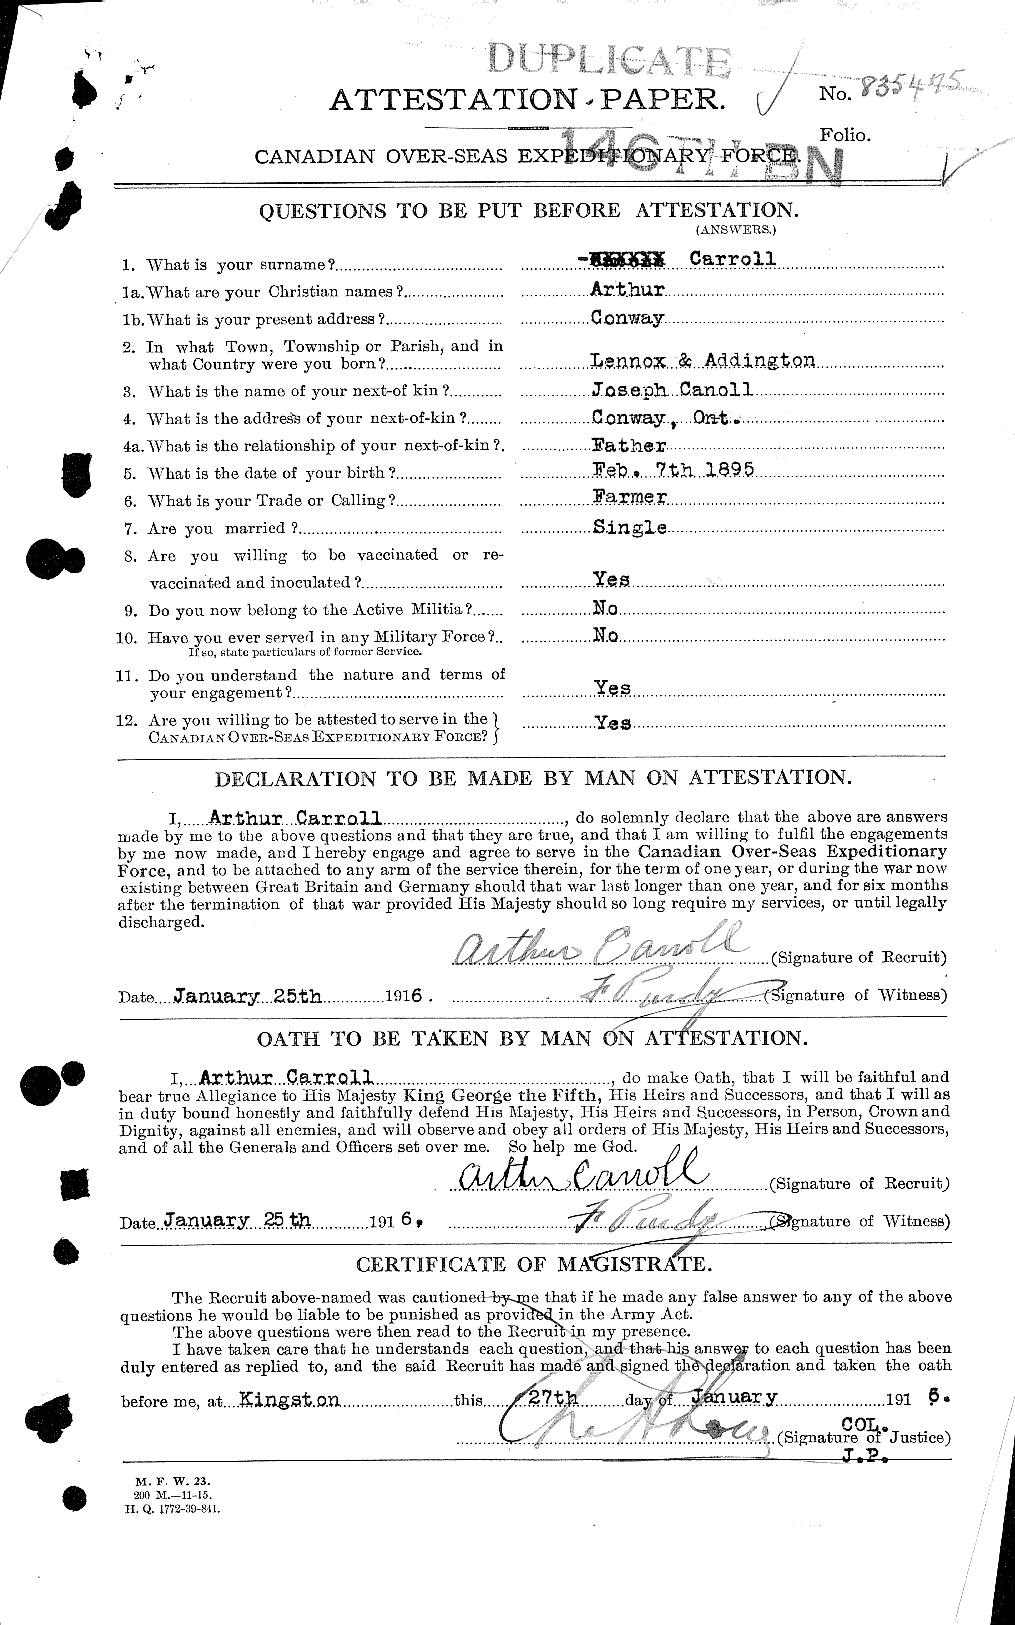 Dossiers du Personnel de la Première Guerre mondiale - CEC 010628a